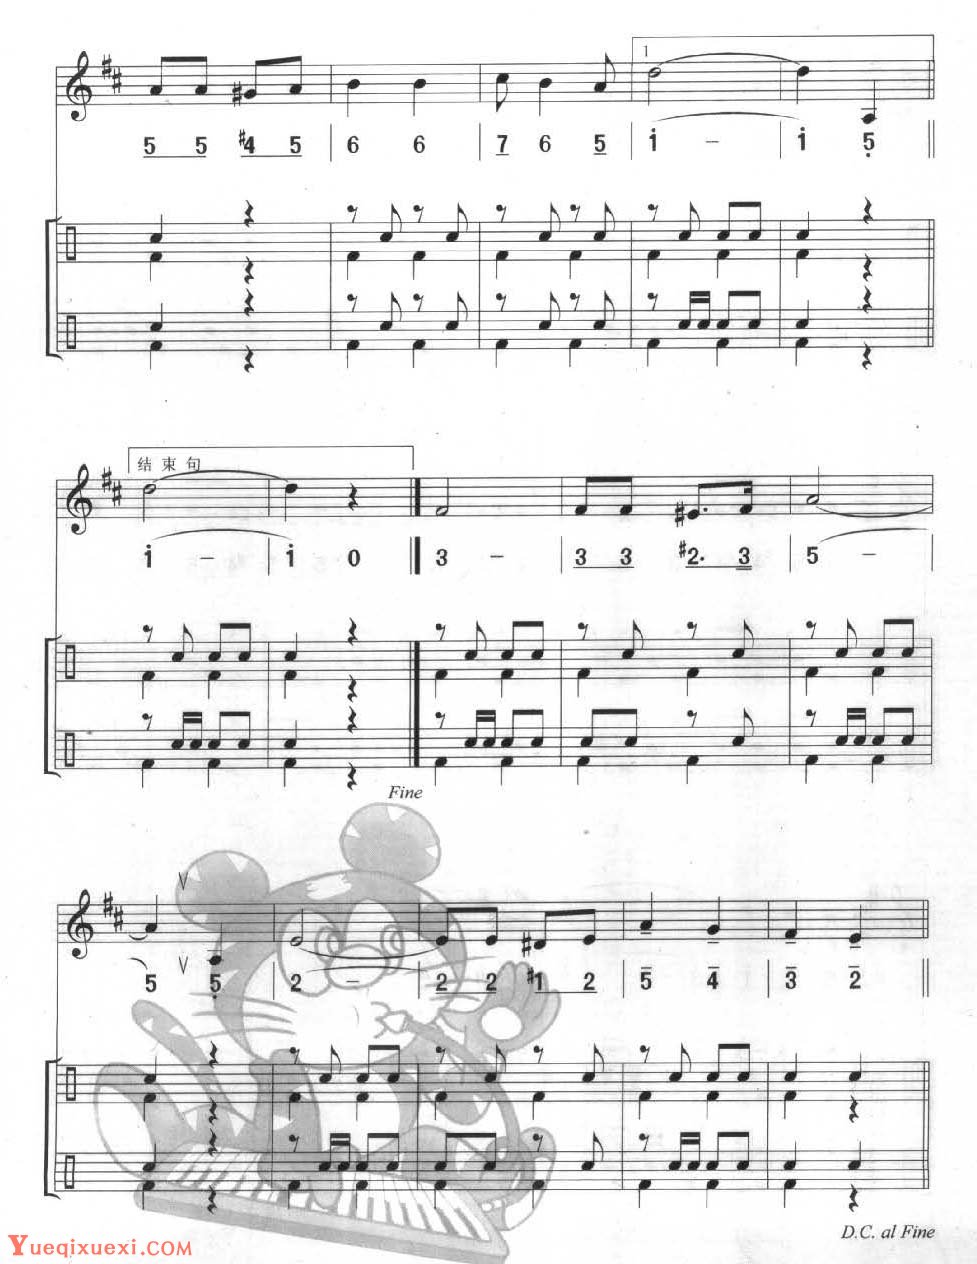 多声部口风琴乐曲【阿童木之歌（总）】加入打击乐的练习